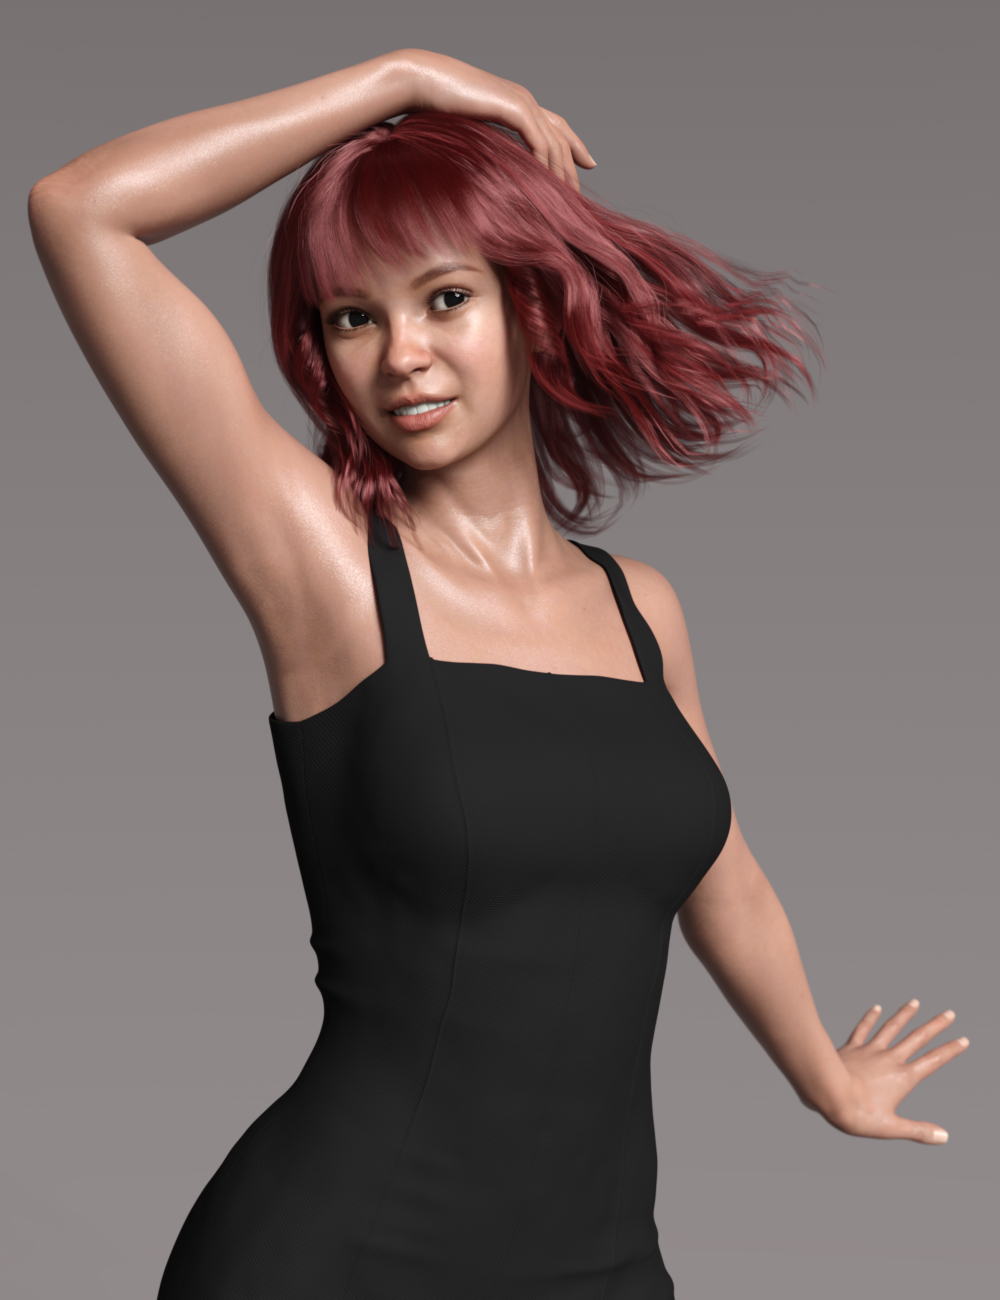 Kalaa for Genesis 8 Female by: Goanna, 3D Models by Daz 3D